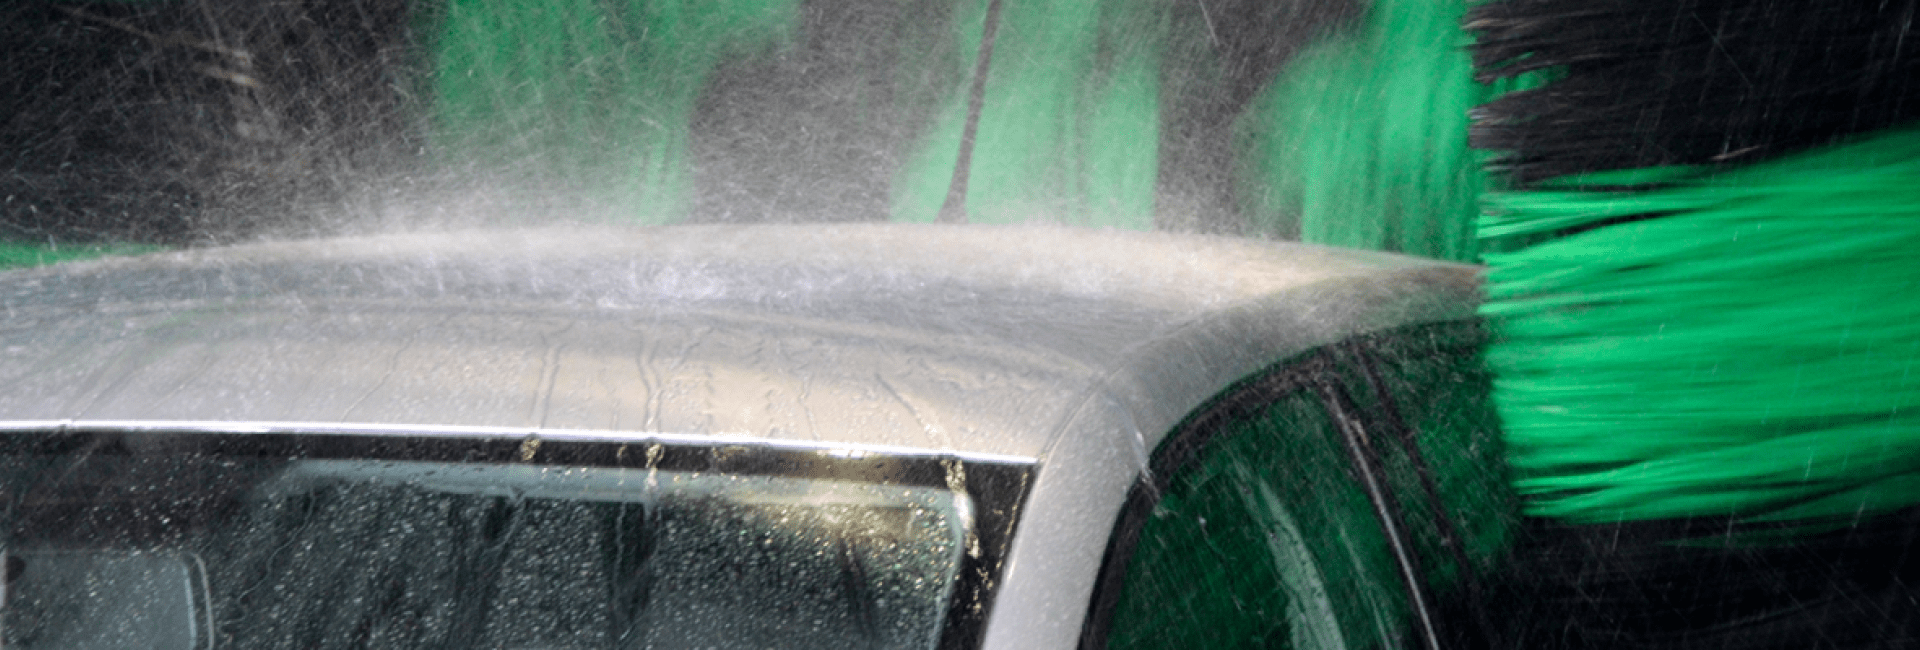 Le toit d'une voiture sur lequel l'eau, telle qu'une forte pluie, tombe lorsqu'elle est lavée par les buses à haute pression d'un portique de lavage